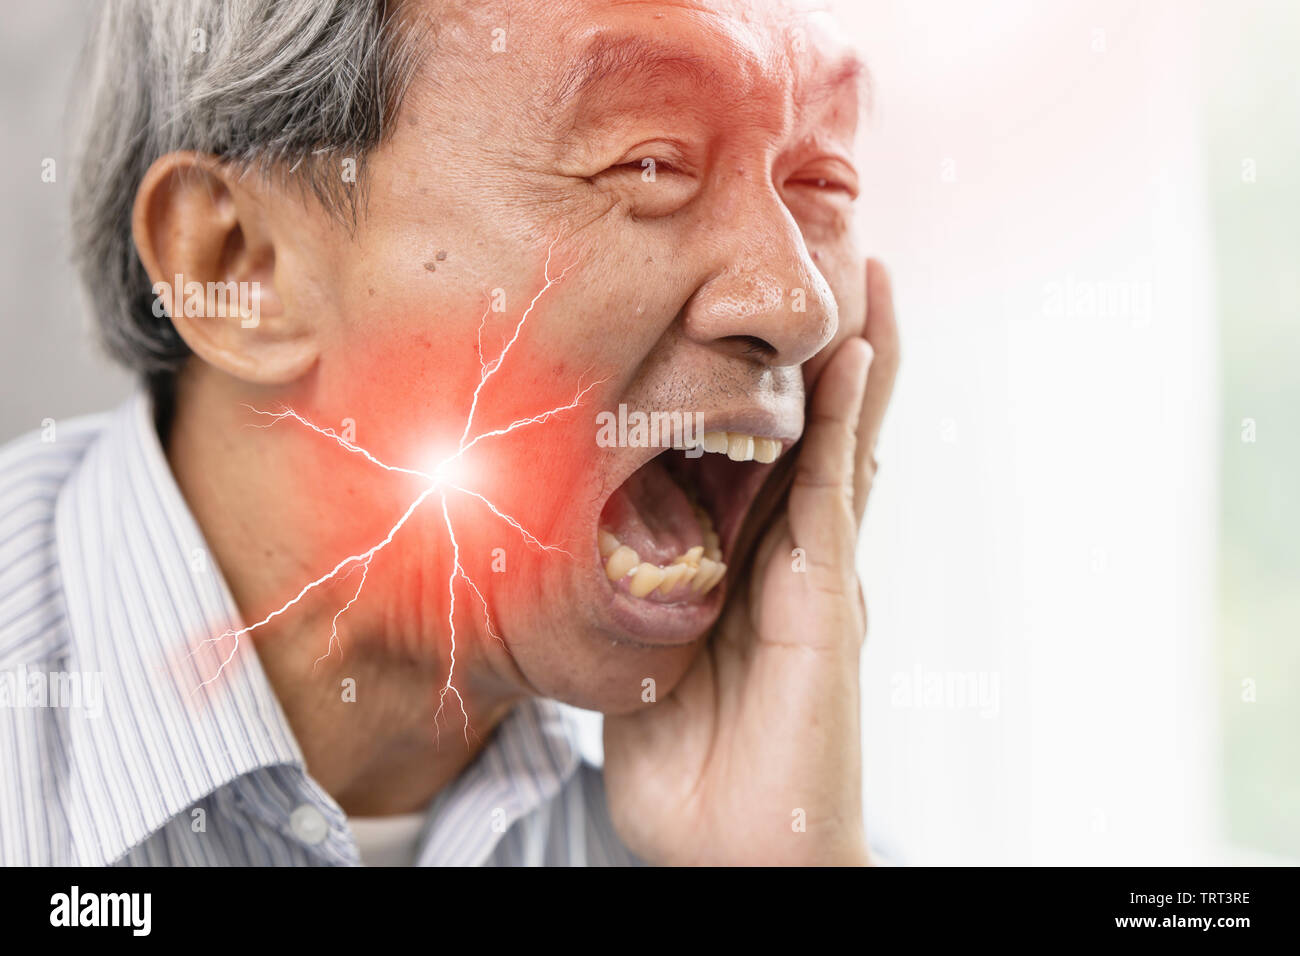 Ältere Mann mit schweren Zahnschmerzen und überempfindliche Zähne. verfallenen Zahn schmerzlichen Gesichtsausdruck. Stockfoto